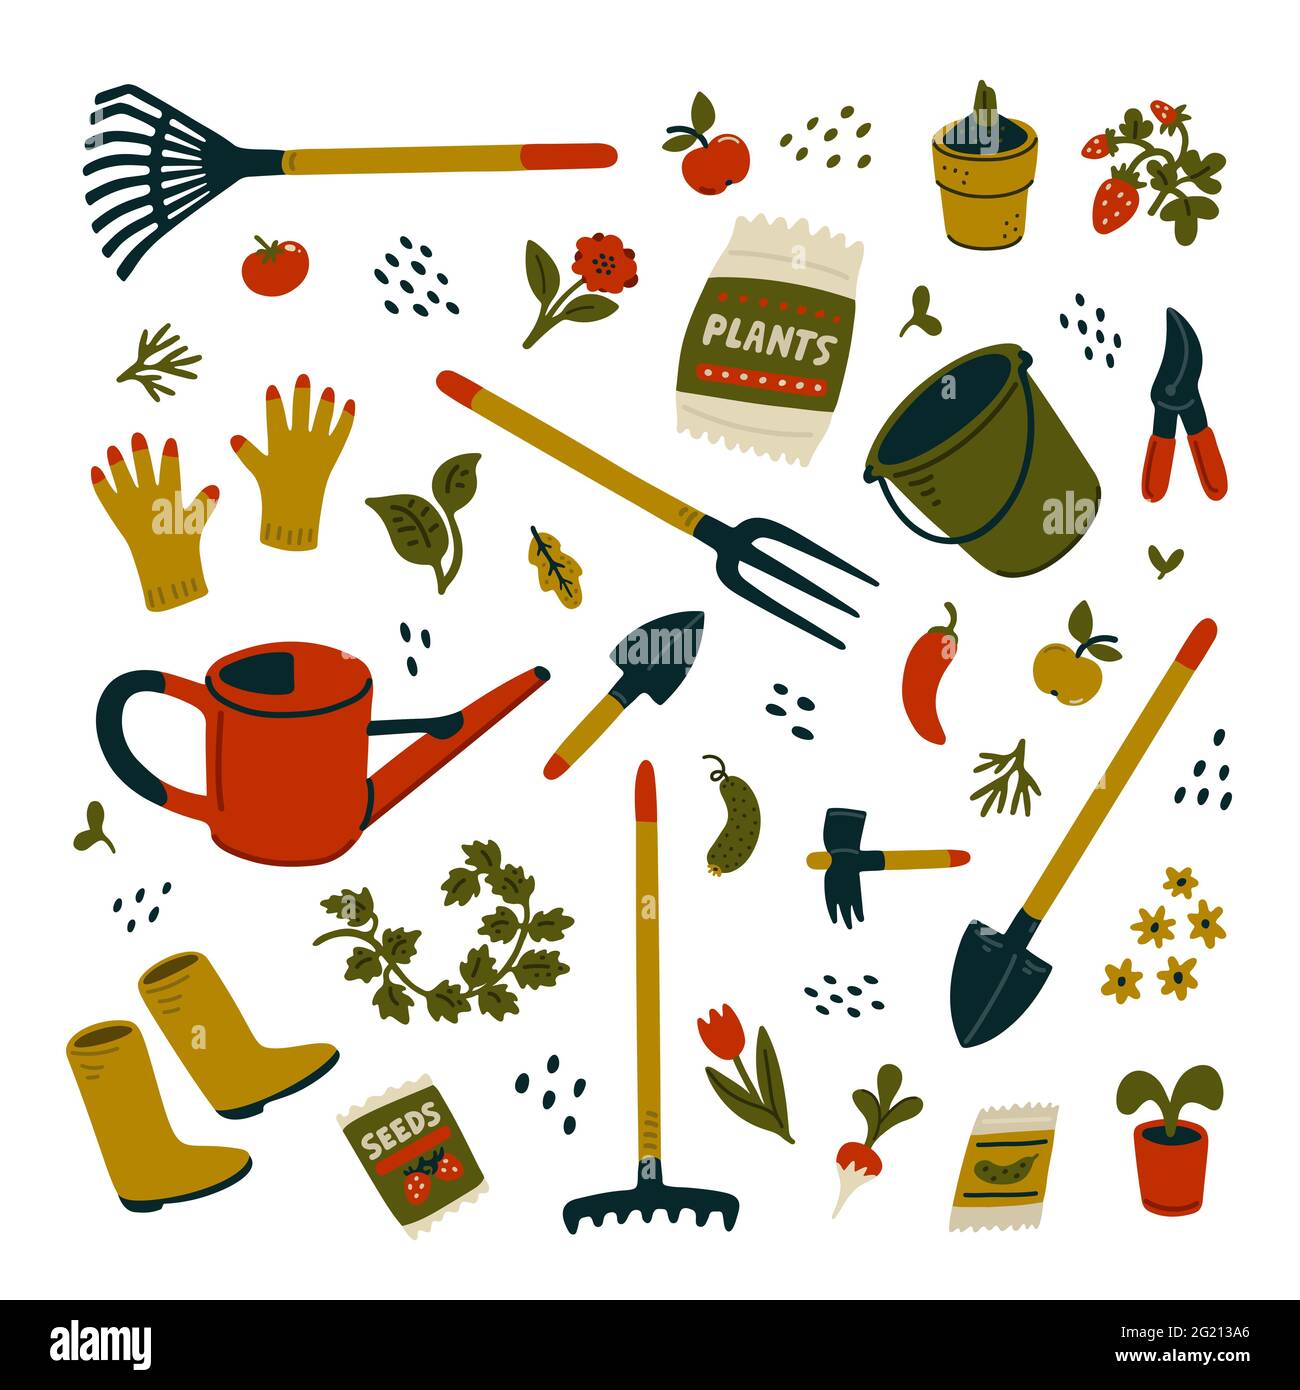 Gartengeräte-Set. Verschiedene Arten von Werkzeugen für die Gartenarbeit. Vektor-Illustration in flacher Cartoon-Stil auf weißem Hintergrund Stock Vektor